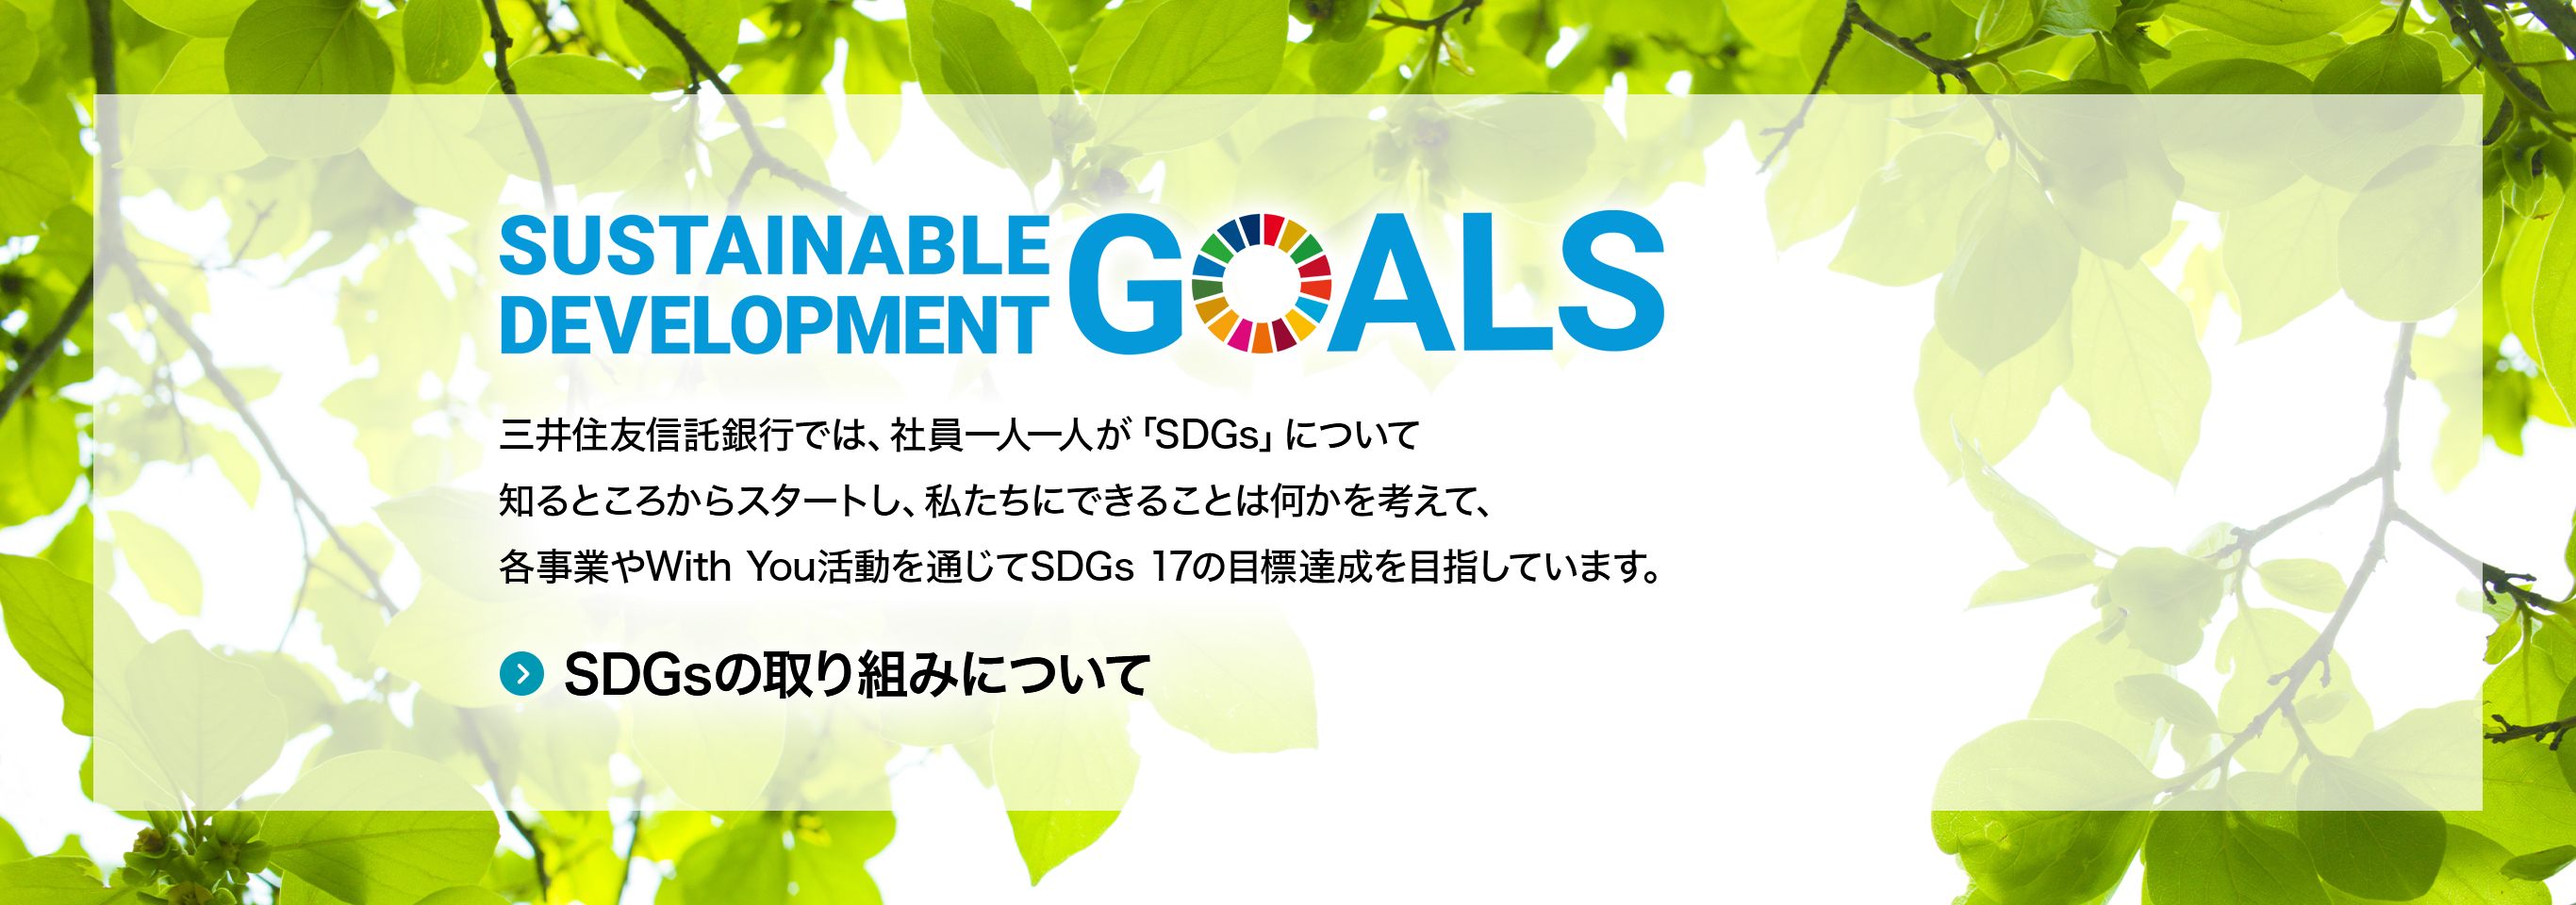 SUSTAINABLE DEVELOPMENT GOALS 三井住友信託銀行では、社員一人一人が「SDGs」について知るところからスタートし、私たちにできることは何かを考えて、各事業やWith You活動を通じてSDGs 17の目標達成を目指しています。SDGsの取り組みについて